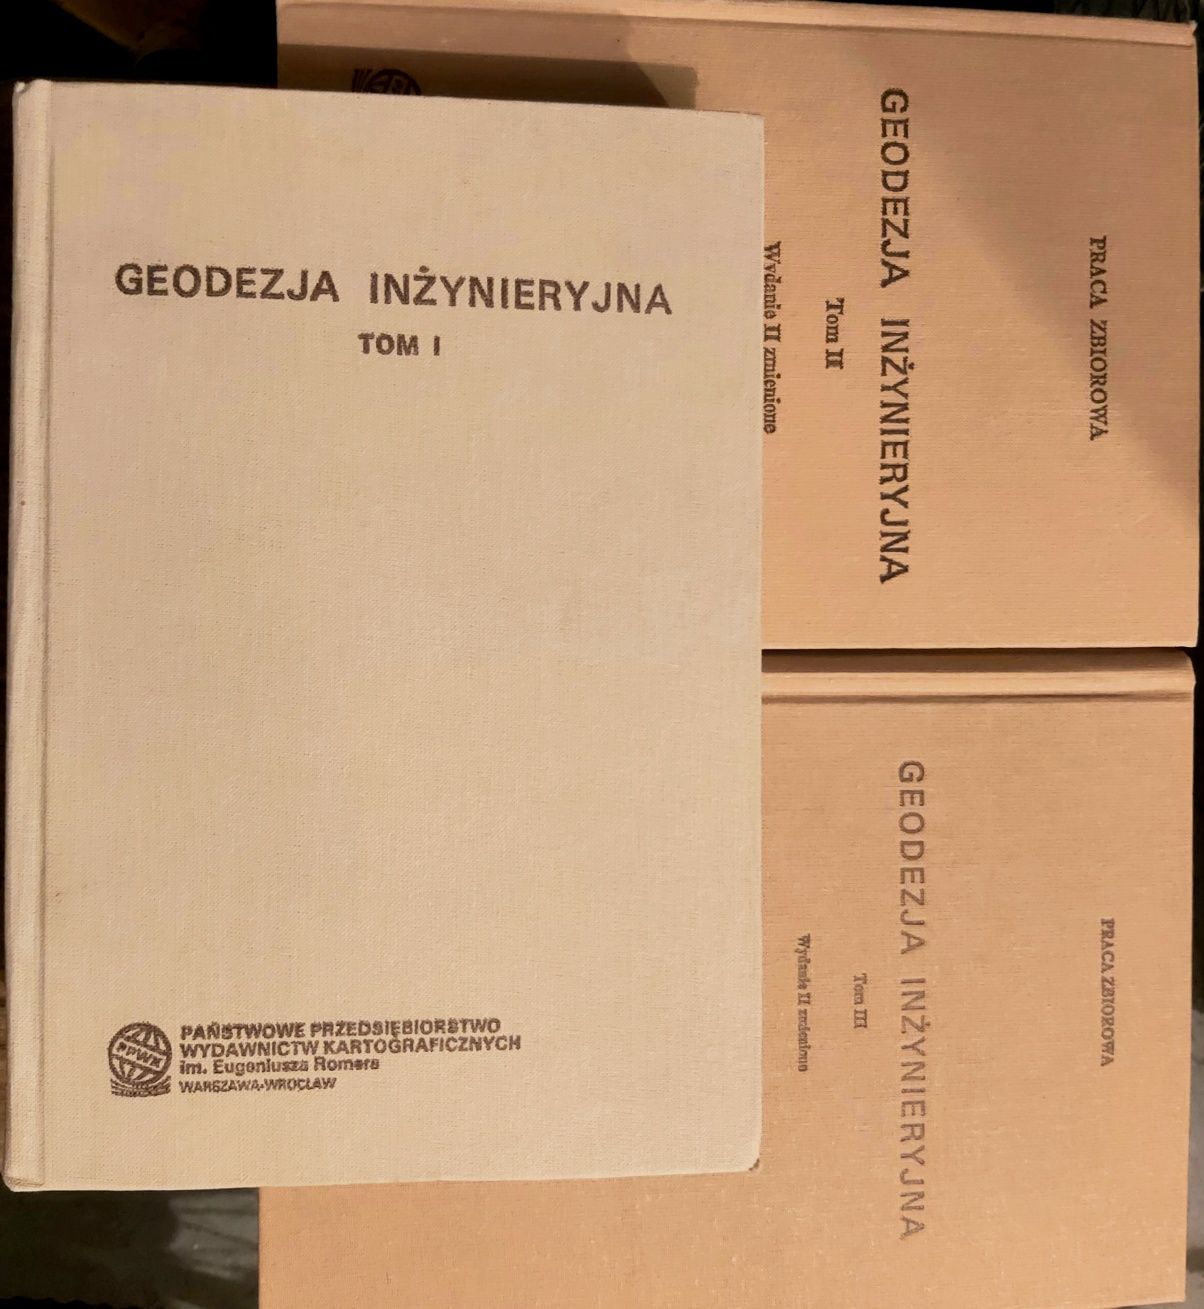 Geodezja Inżynieryjna- 3 tomowe wydawnictwo